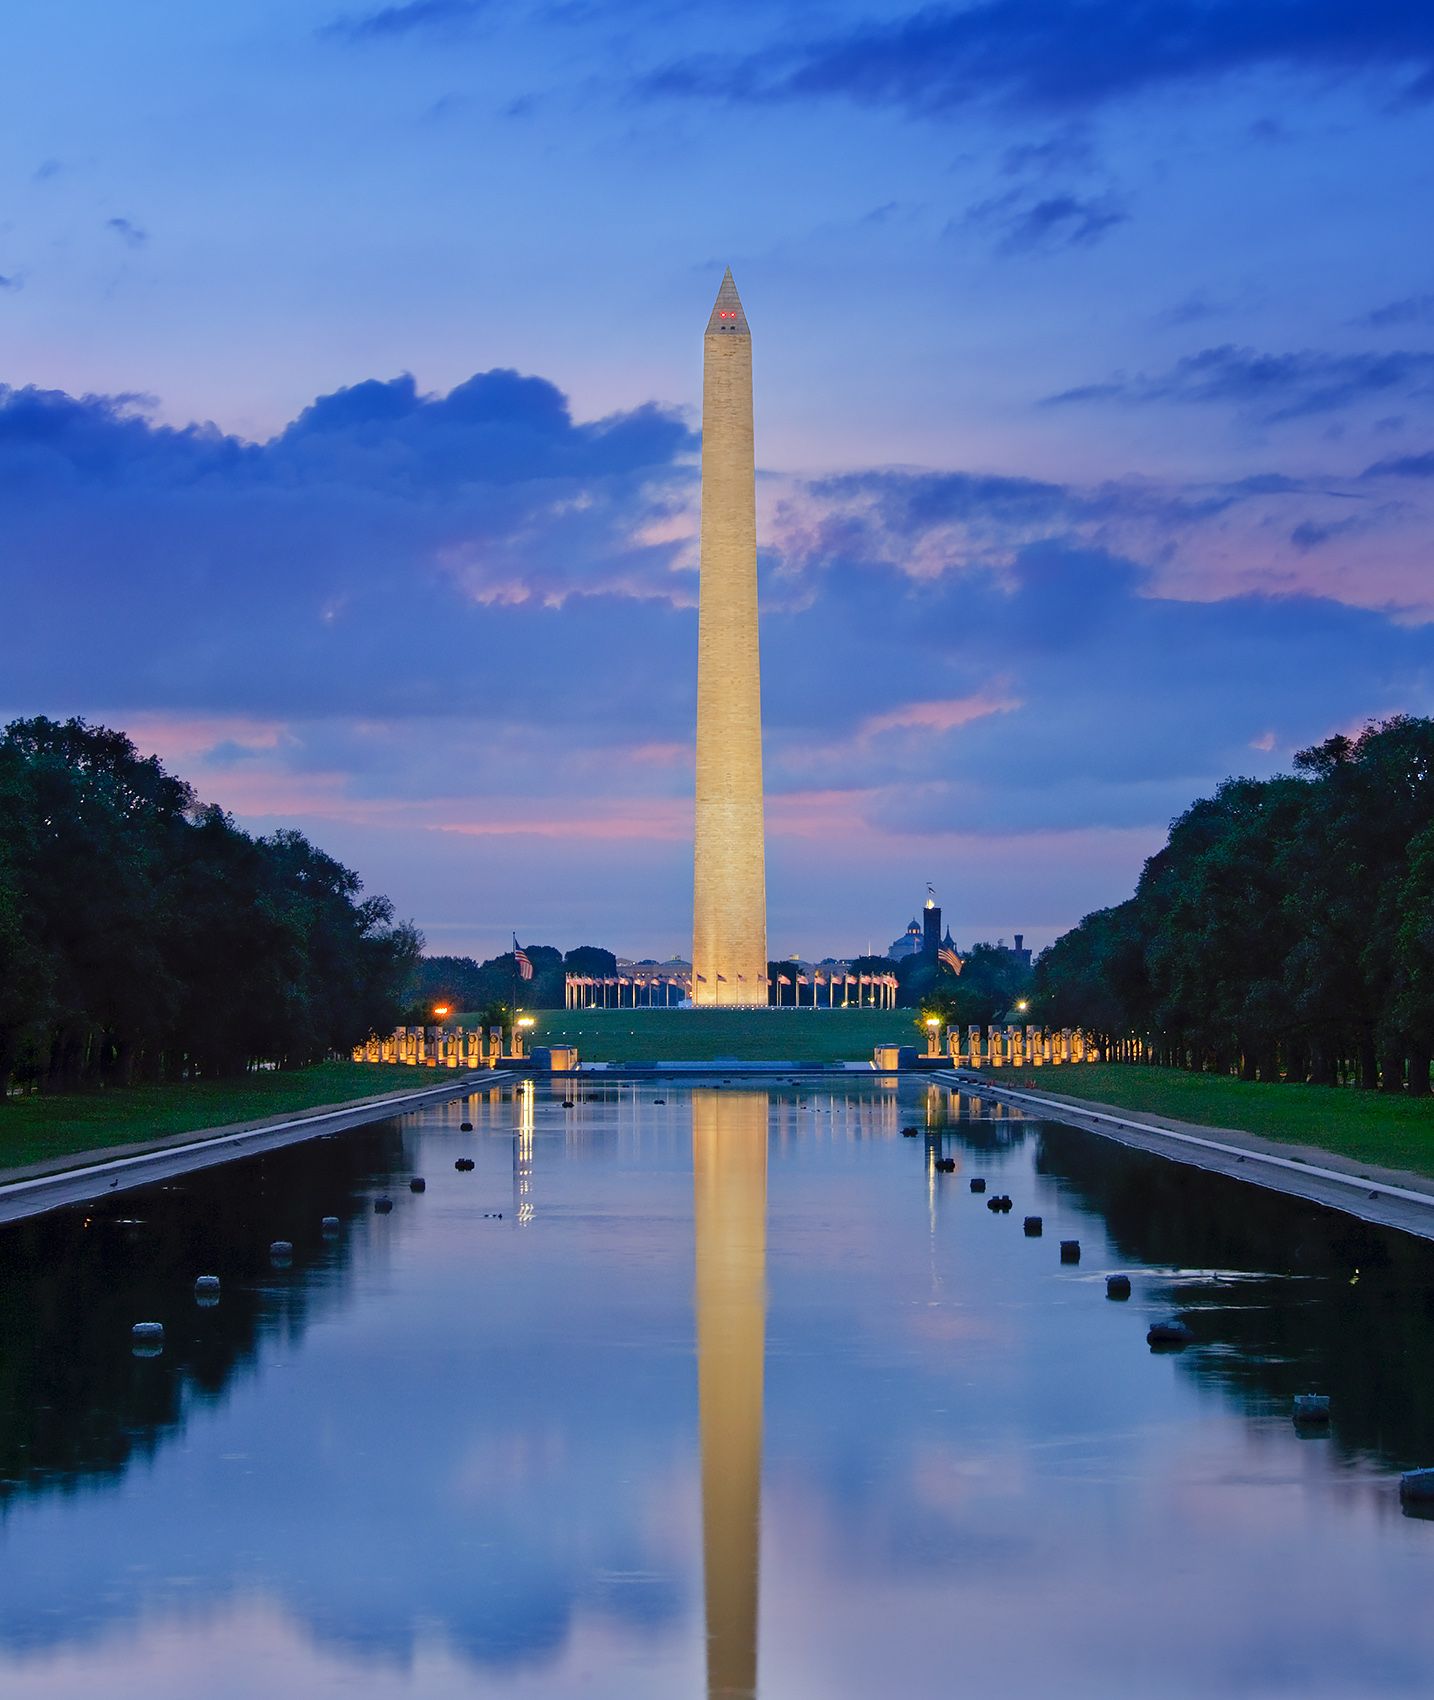 Washington Monument 1